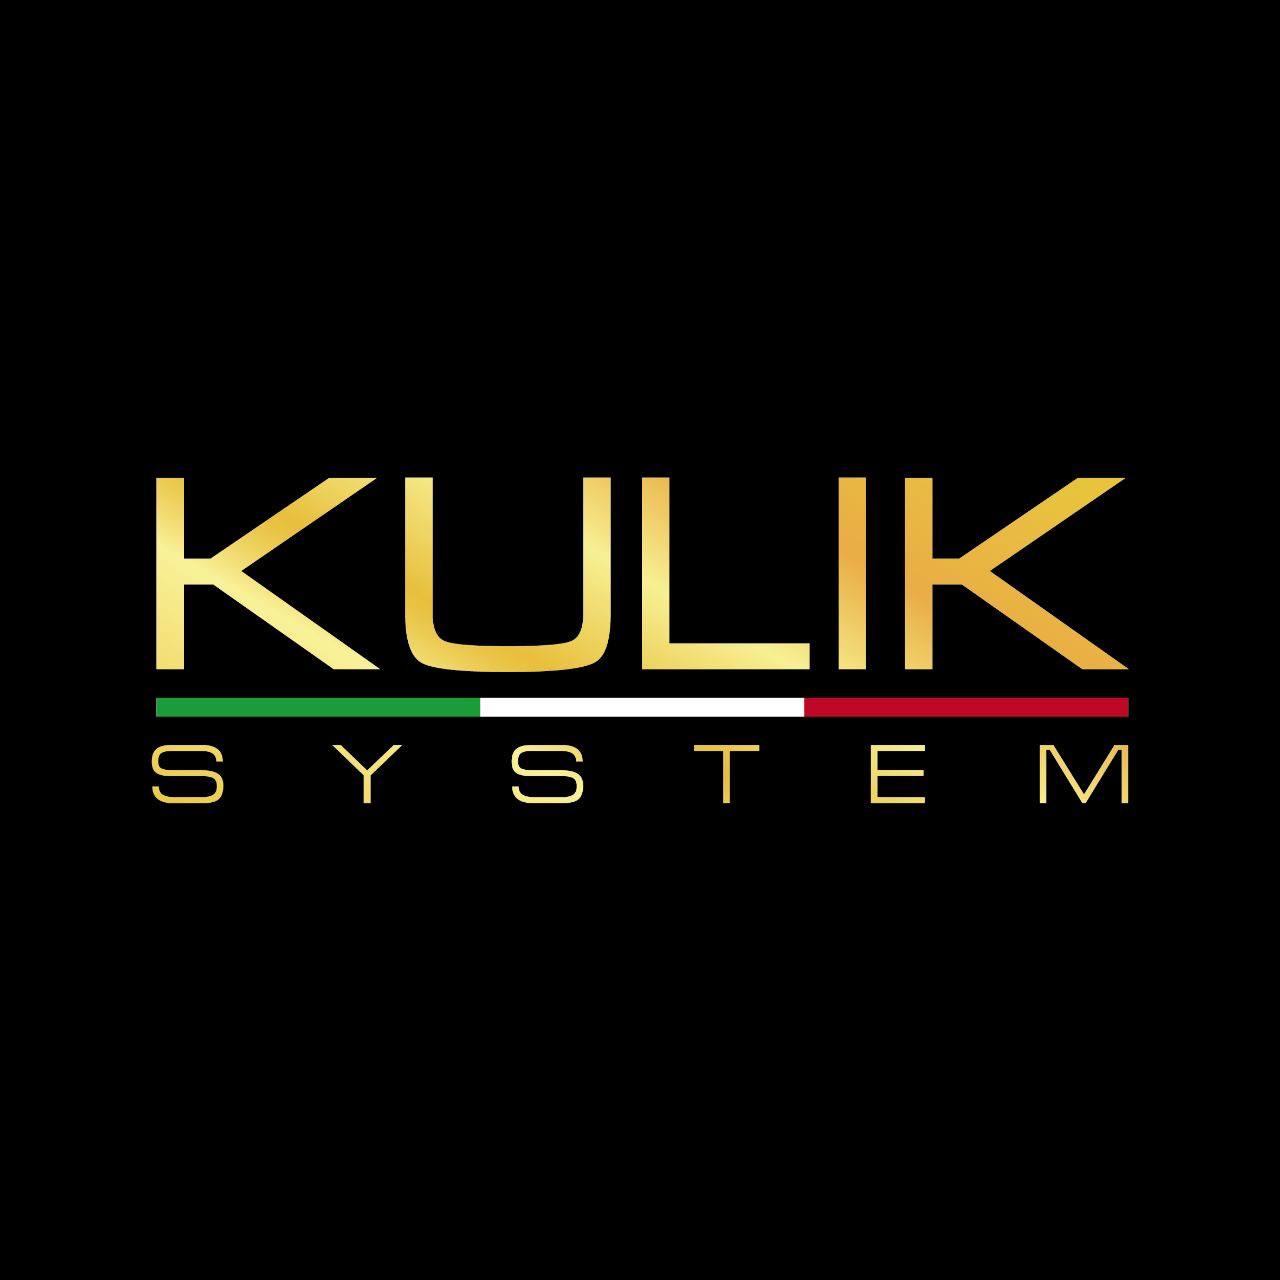 KULIK System